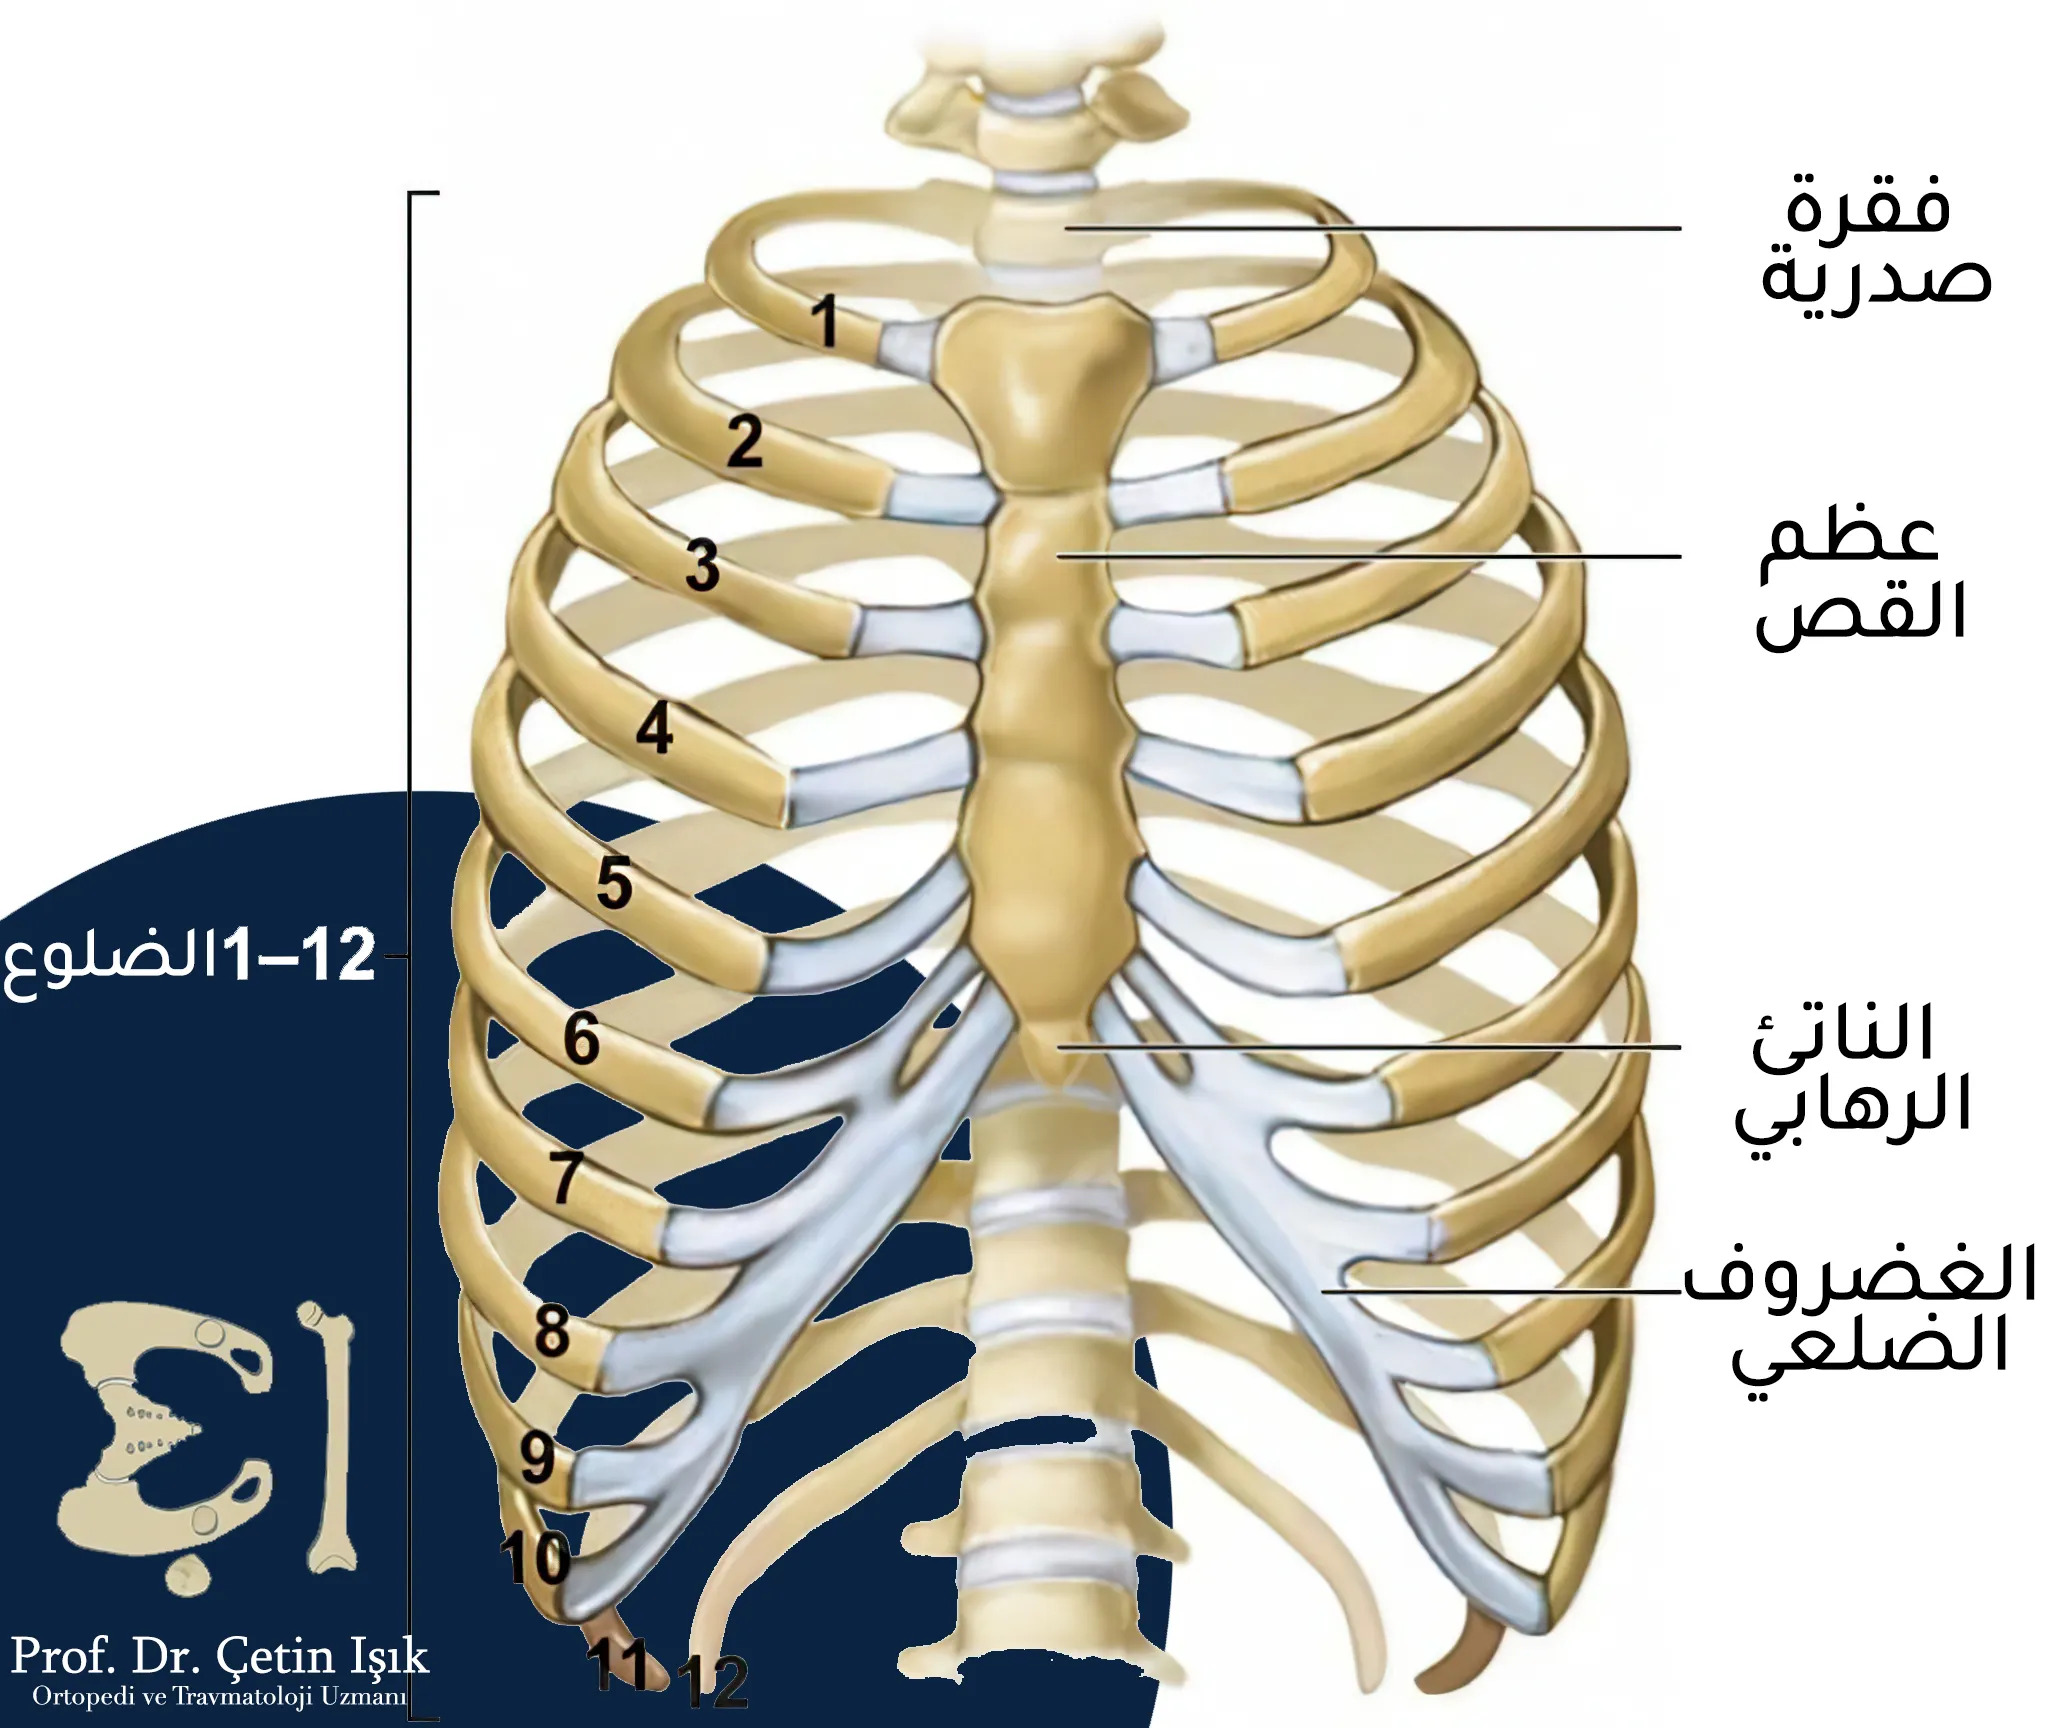 نلاحظ من الصورة أن القفص الصدري يتألف من عظم القص والفقرات الصدرية والأضلاع وهنالك 12 زوجاً من الأضلاع حيث تتصل الأضلاع السبعة الأولية بعظم القص مباشرة أما الأضلاع الثلاثة التالية فتتصل بشكل غير مباشر بعظم القص من خلال الغضاريف الضلعية وأخر ضلعان لا يتصلان بعظم القص